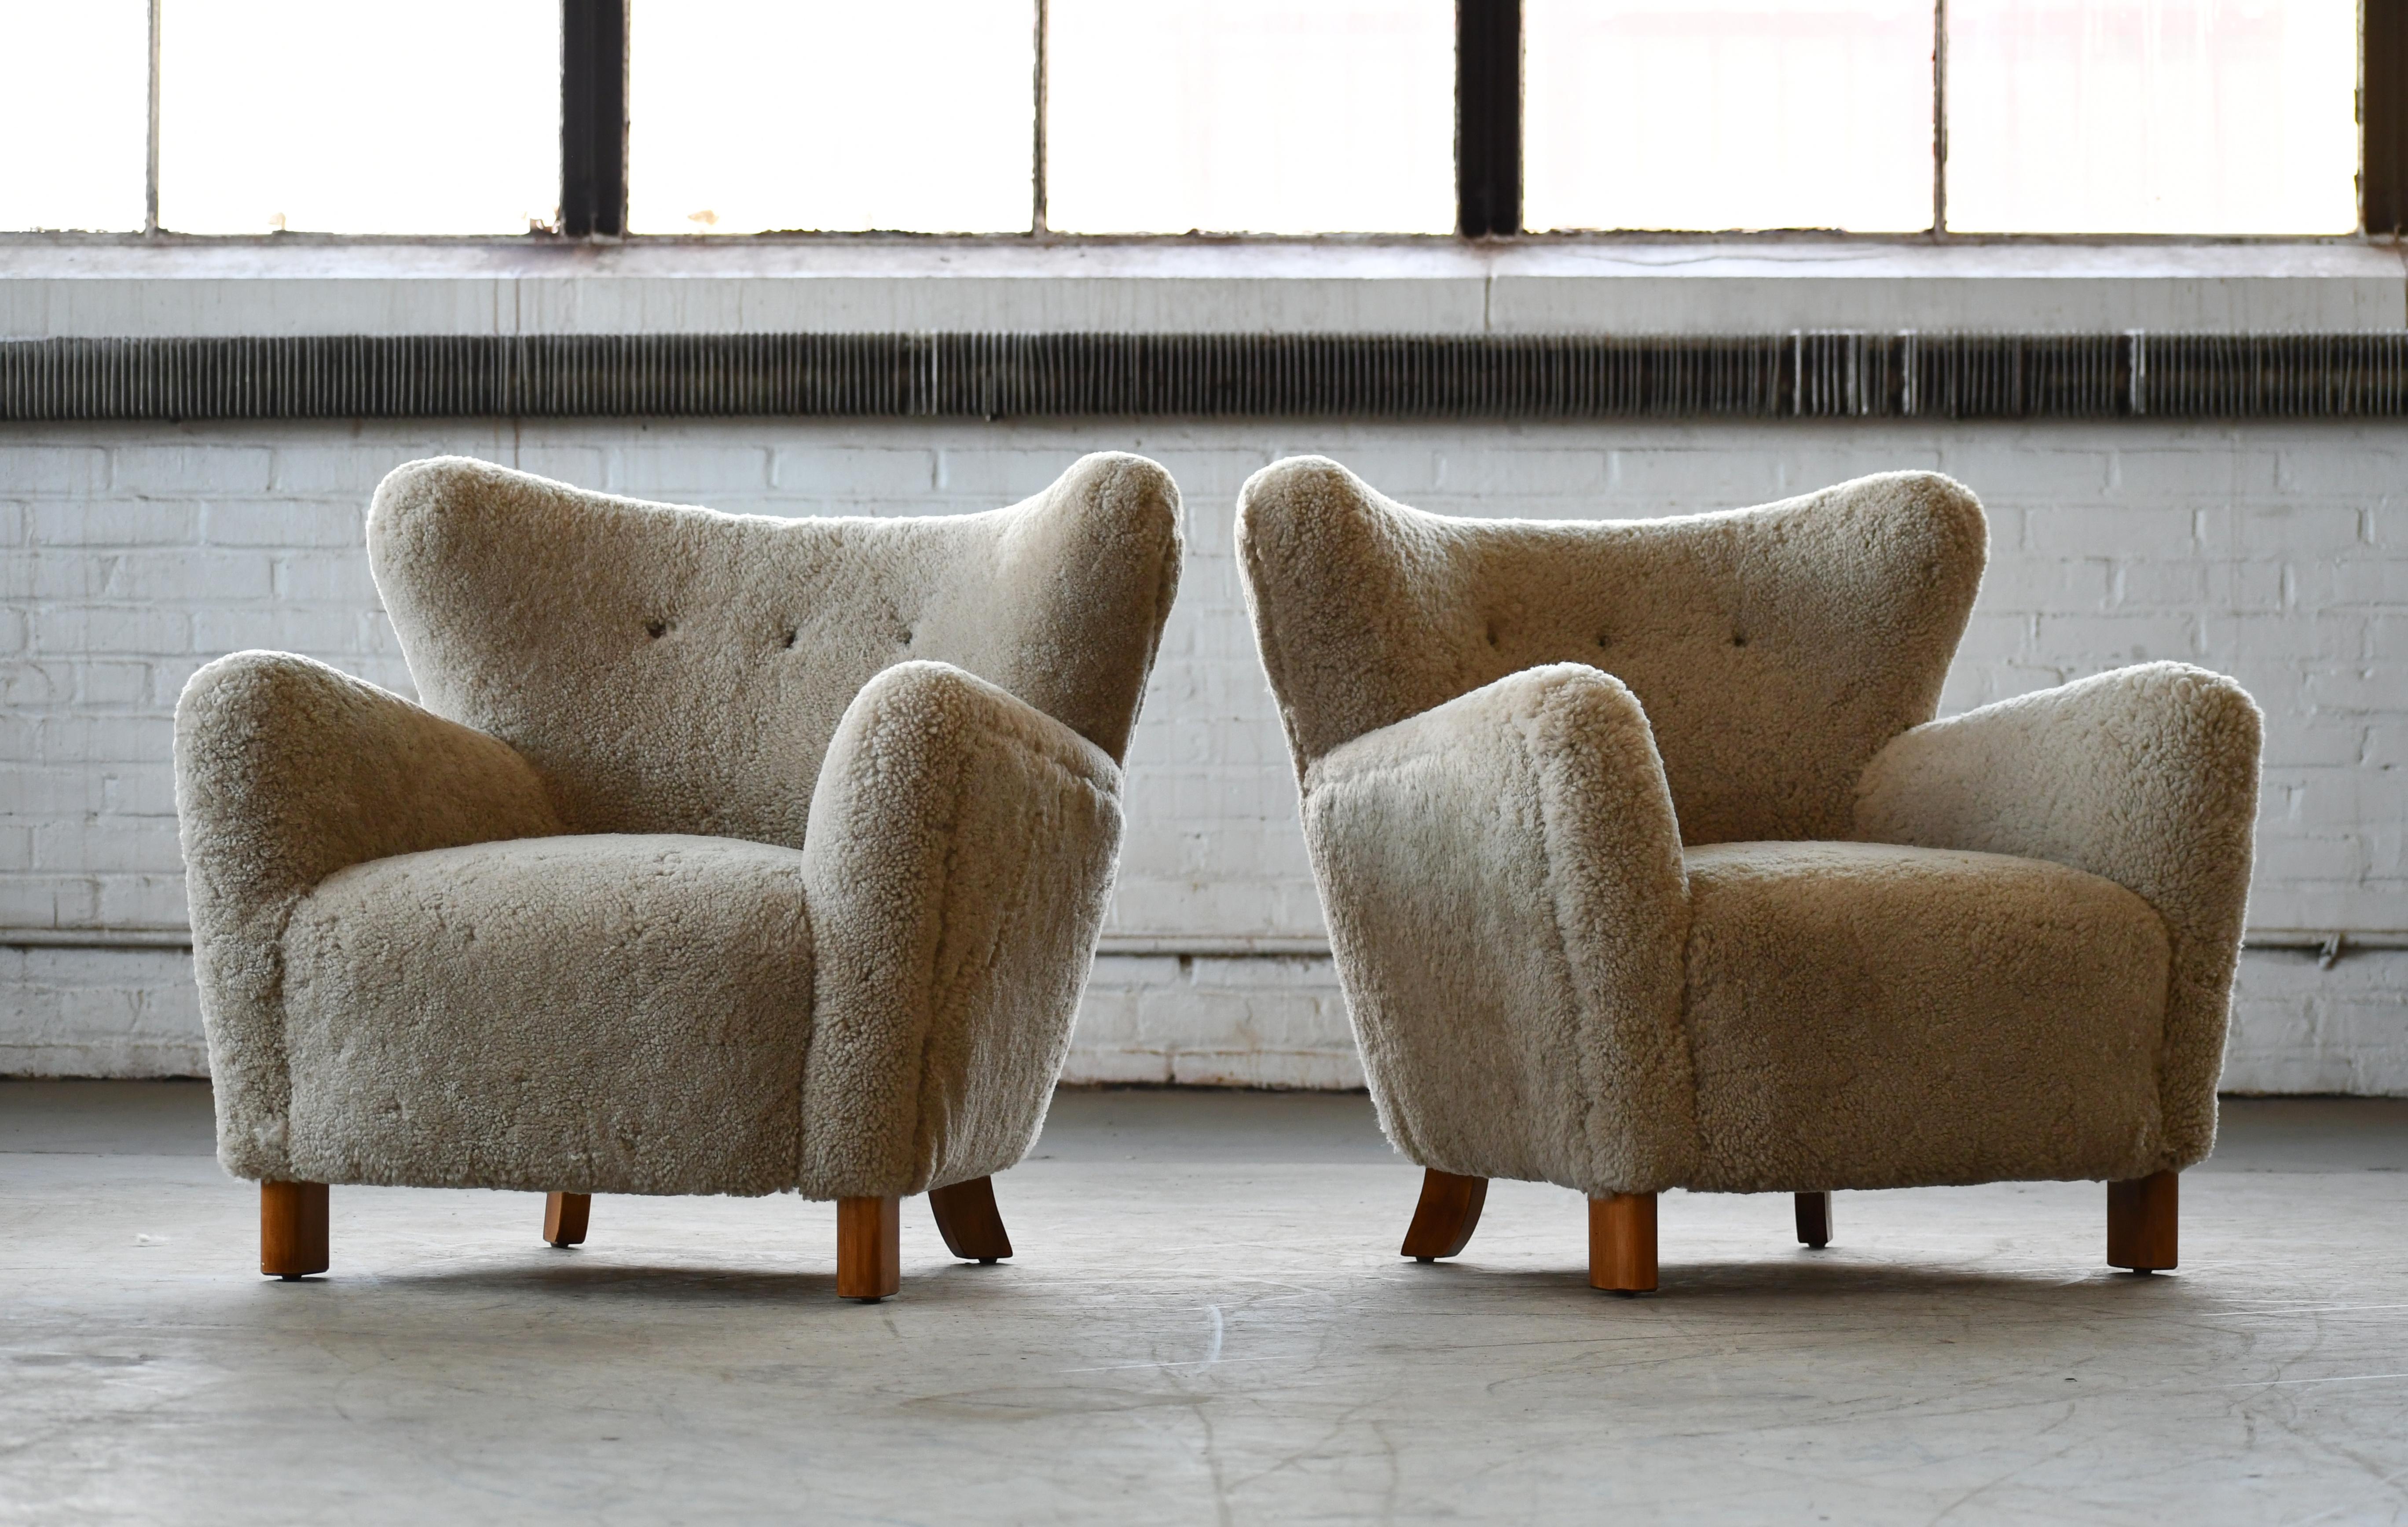 Magnifique paire exubérante de nouvelles chaises longues modernes danoises de notre propre conception. Le design s'inspire des designs classiques des années 1940, mais avec nos propres variations de design et des dimensions actualisées. Les chaises